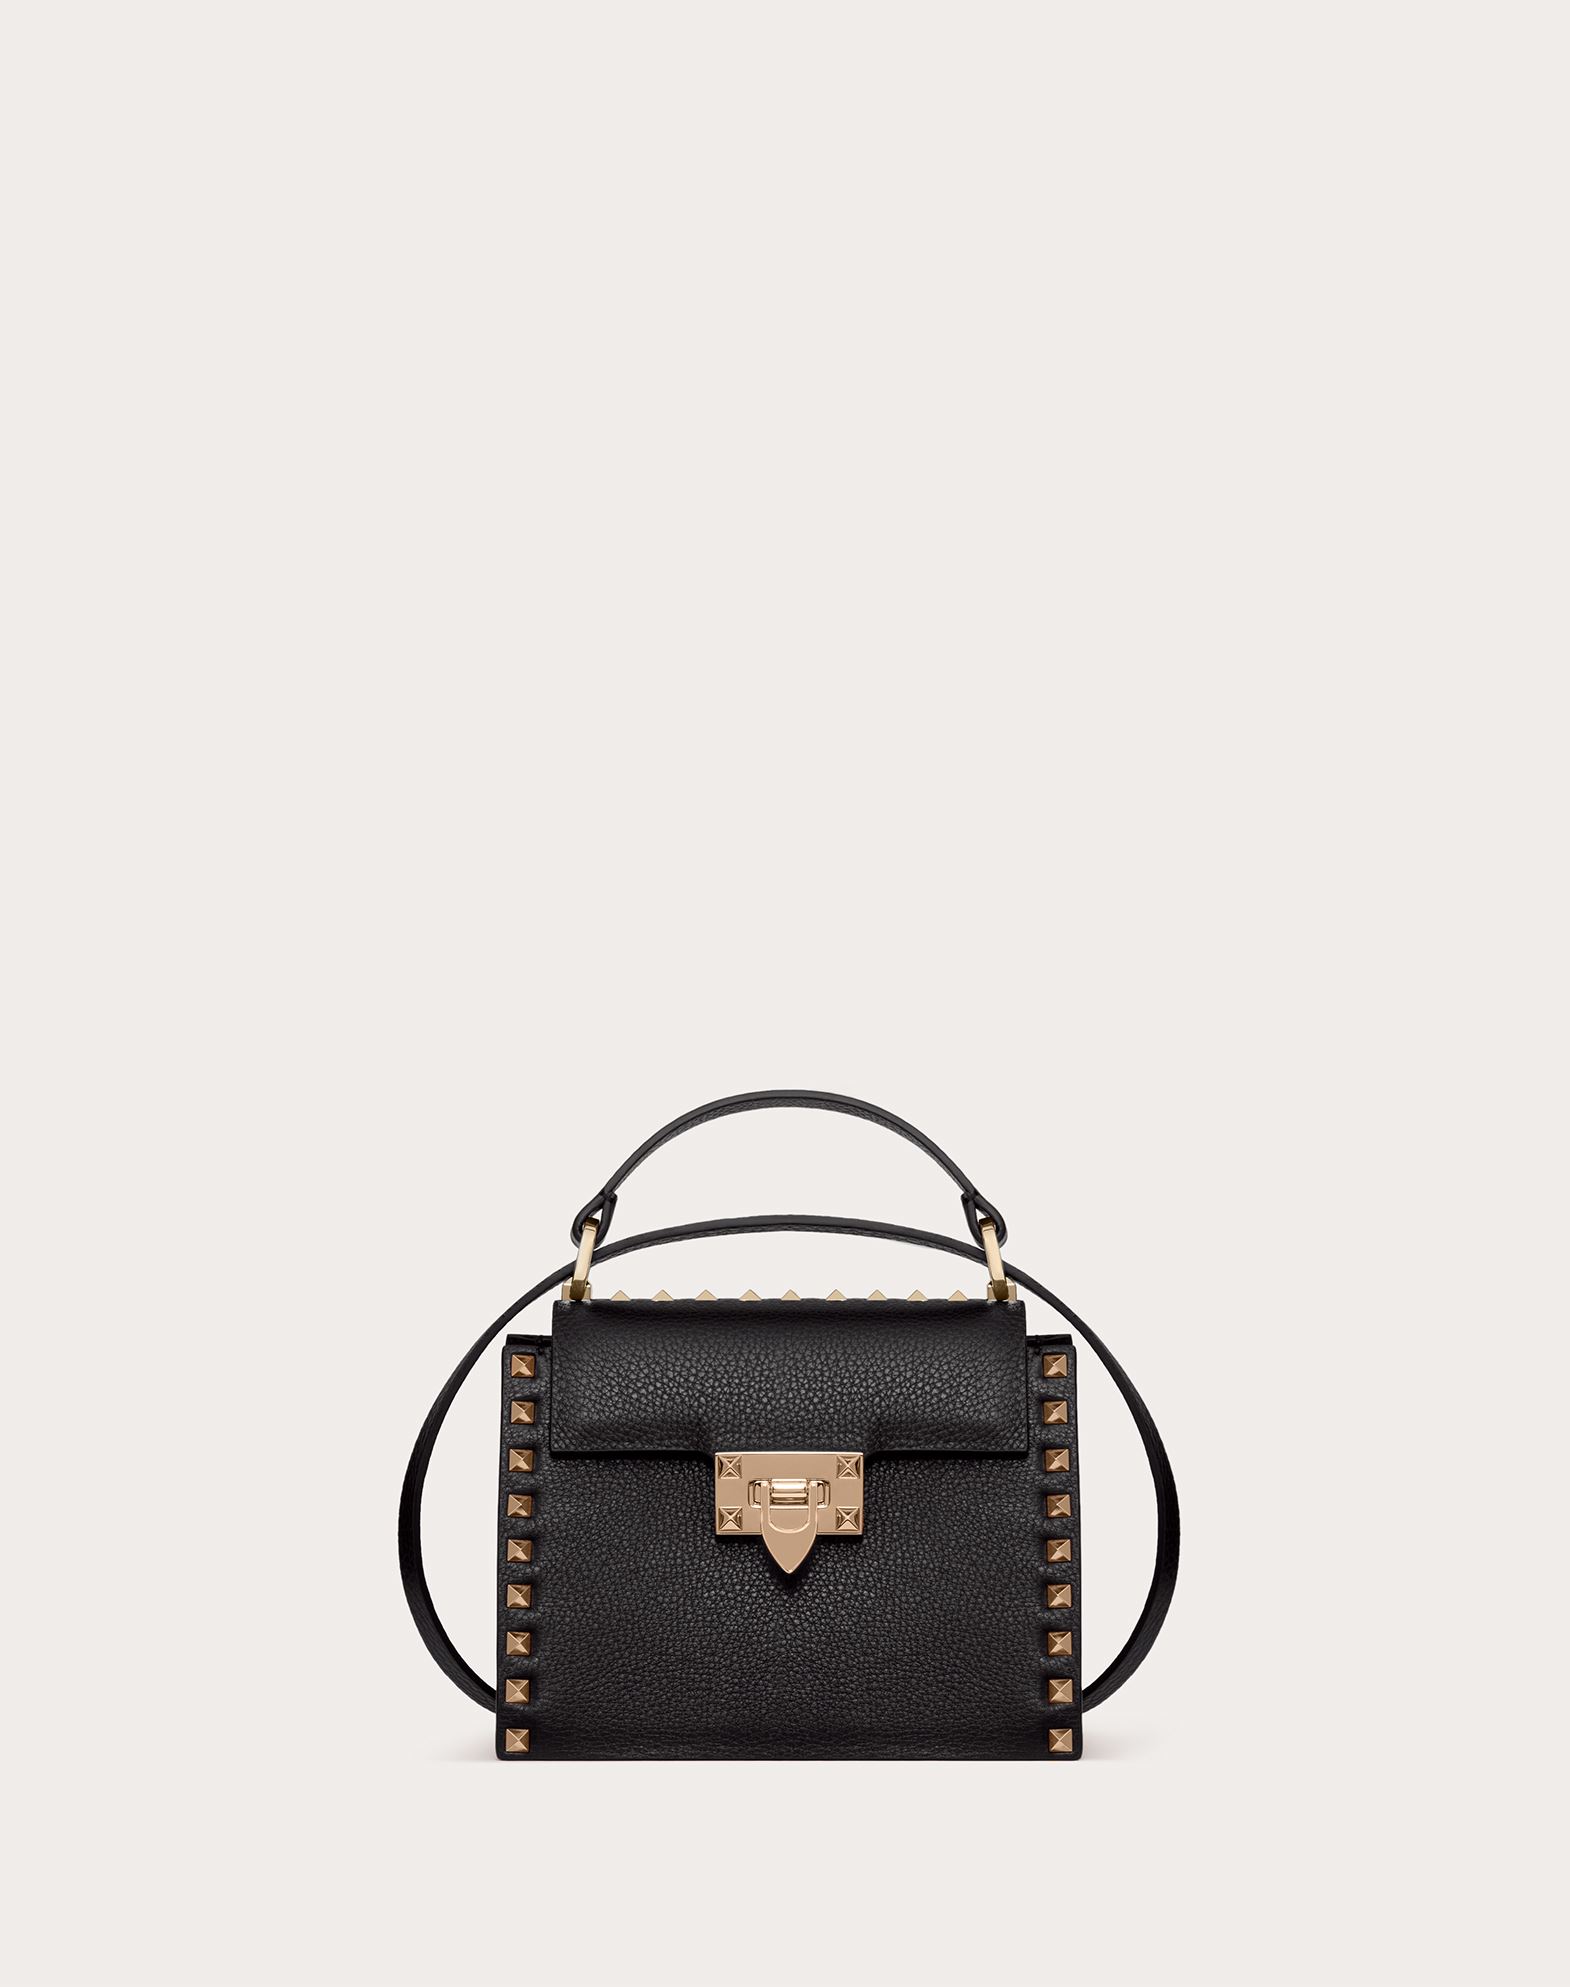 Valentino Garavani Rockstud Grainy Calfskin Handbag In Black